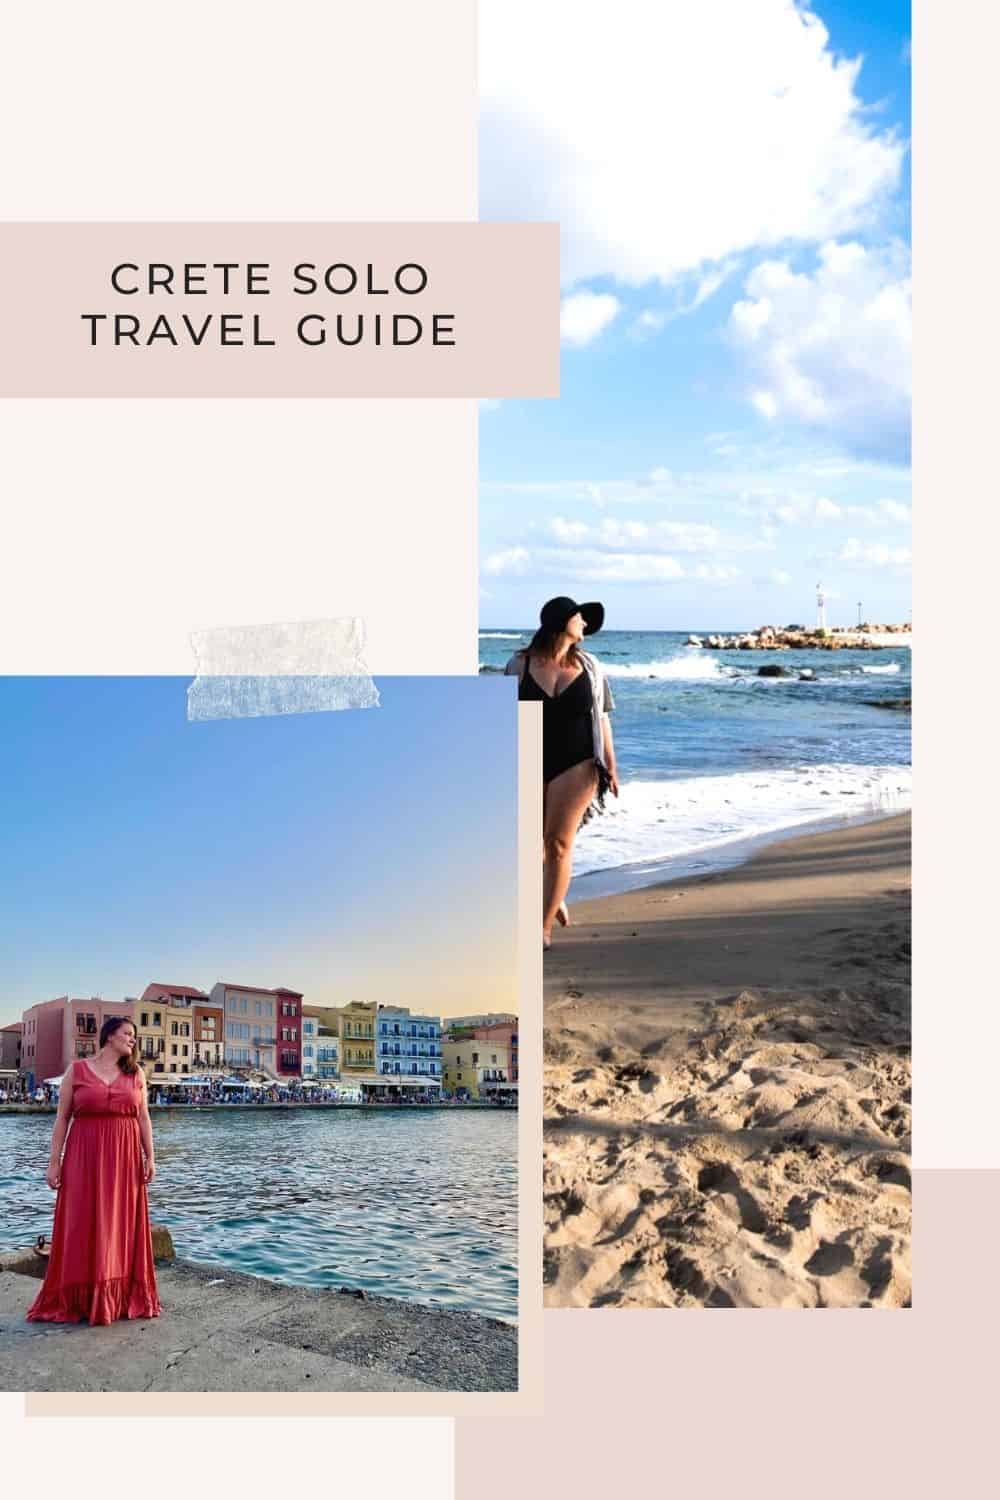 Ultimate Crete Solo Travel Guide